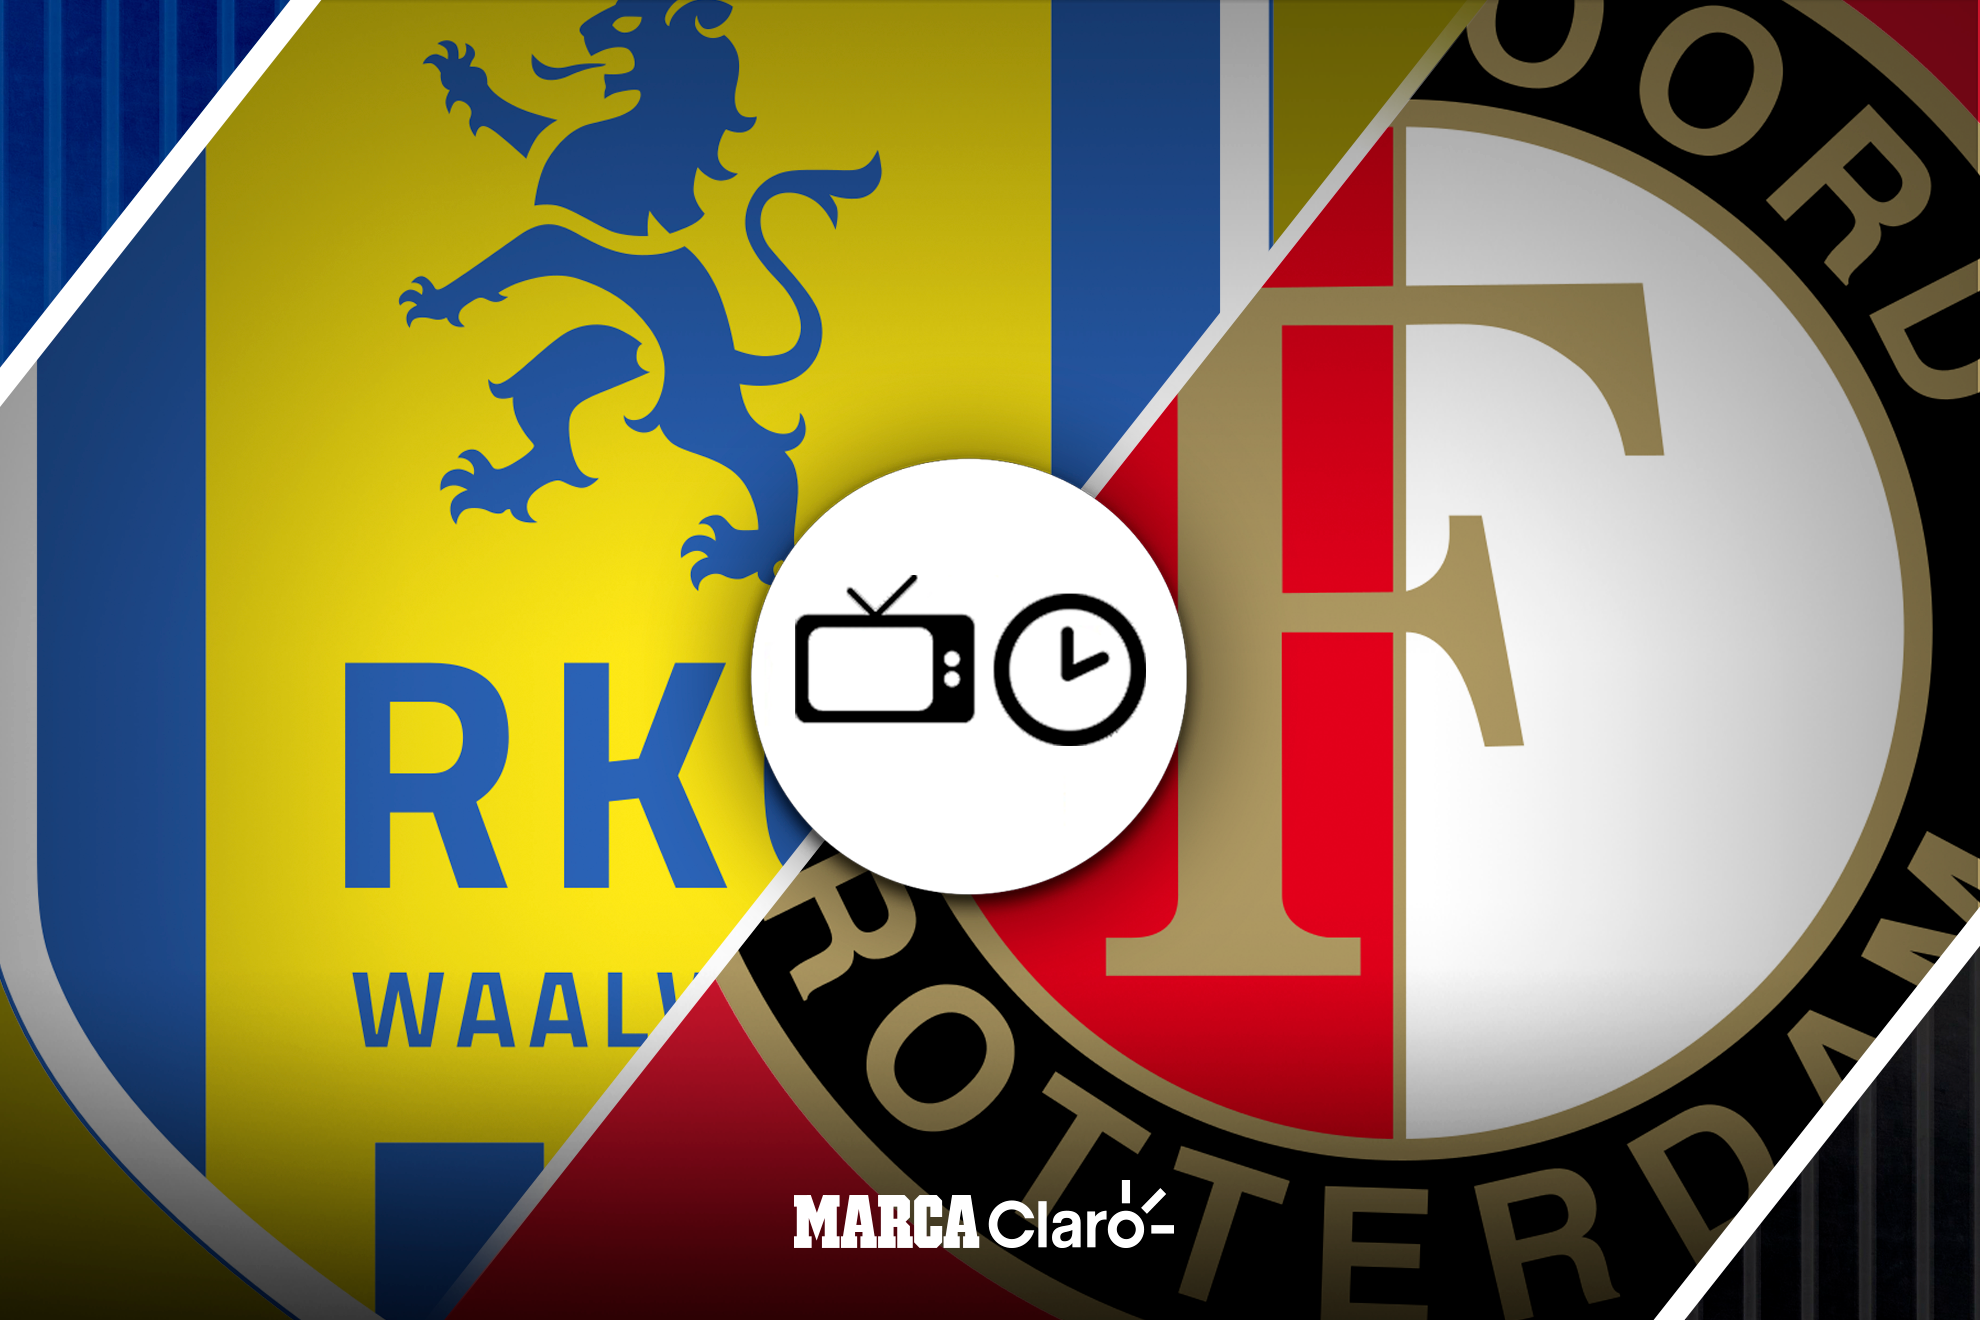 Waalwijk vs Feyenoord, hora, cómo y dónde ver en vivo y en directo online la Liga de Holanda | MARCA Claro